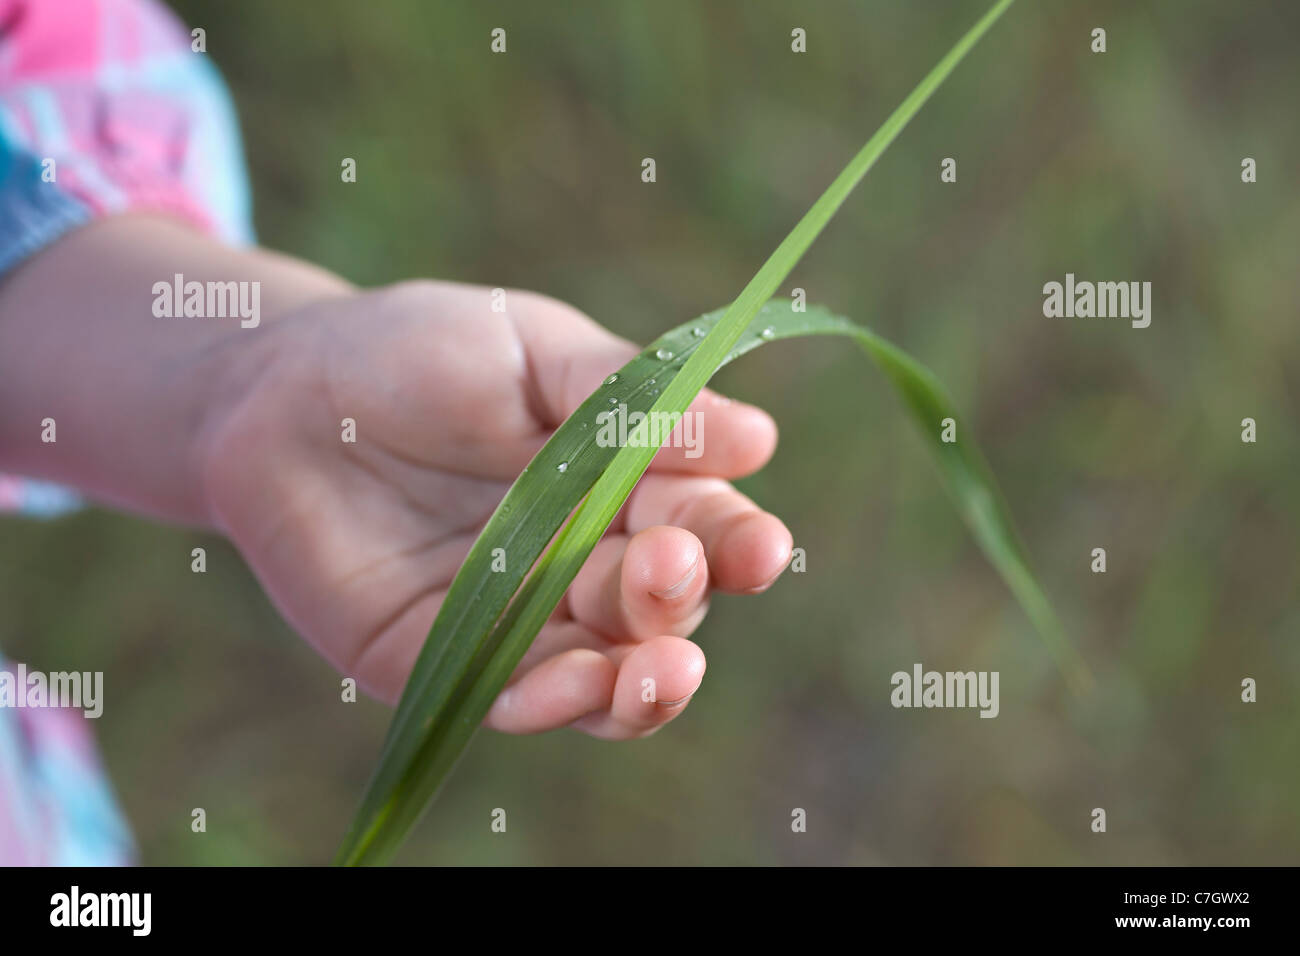 Un enfant tenant des brins d'herbe, focus on hand Banque D'Images